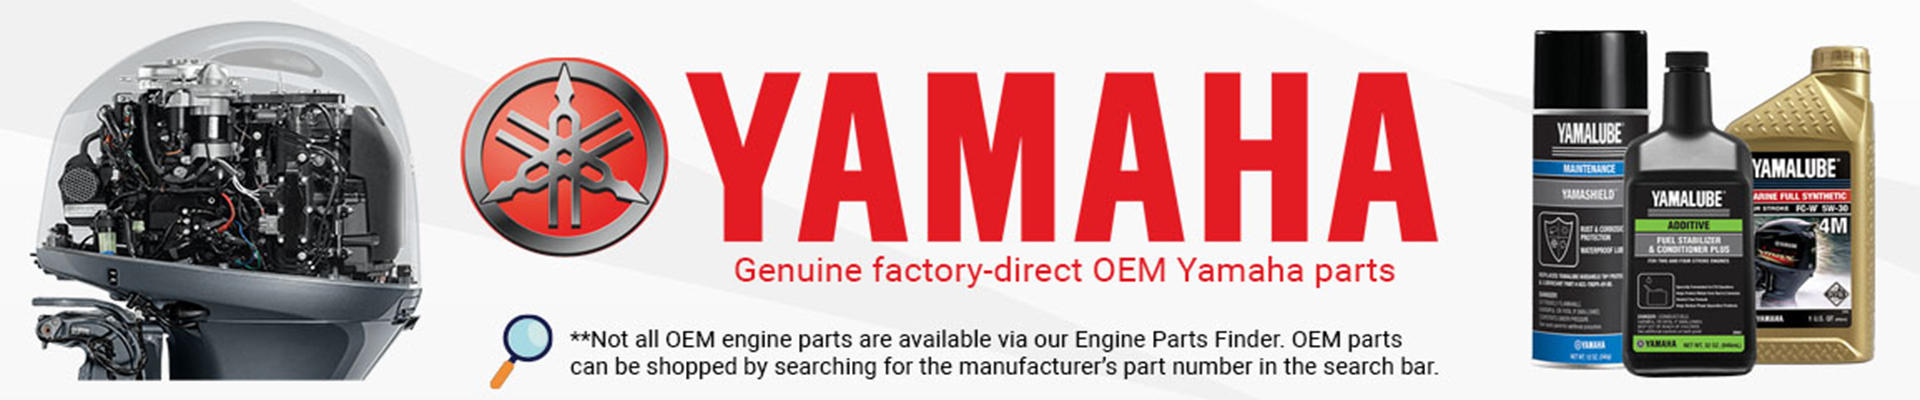 yamaha-brand-page-banner.jpg